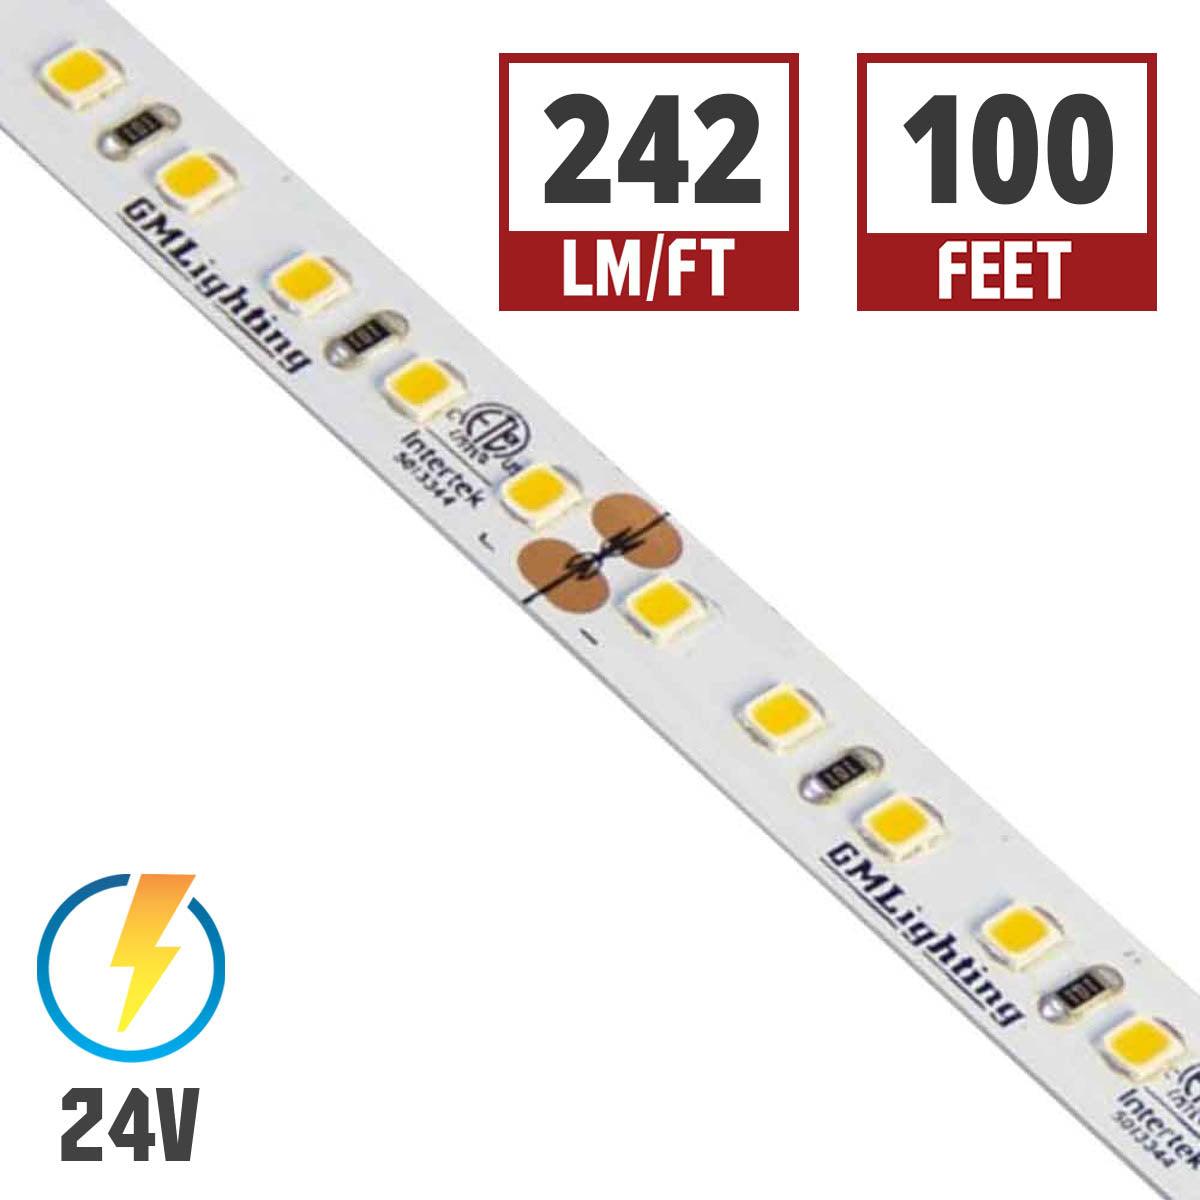 LTR-P Pro LED Strip Light, 3.0W / ft, 240 Lumens per Ft, 24V - Bees Lighting